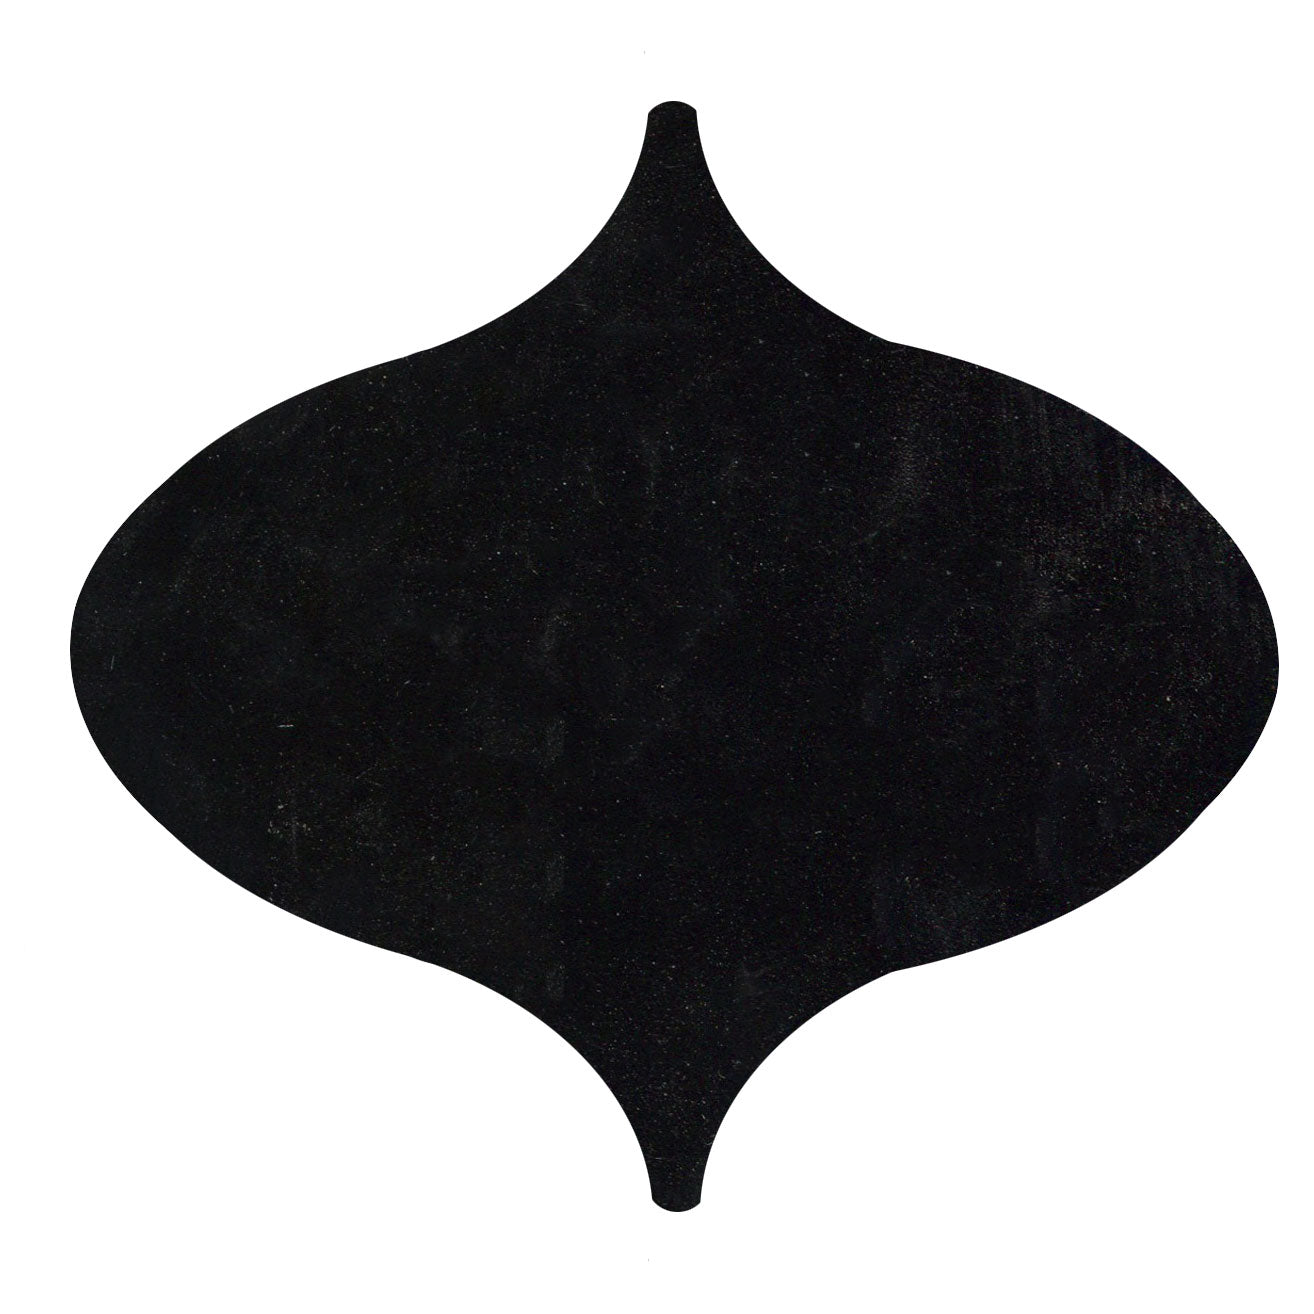 Persian shape tile Black